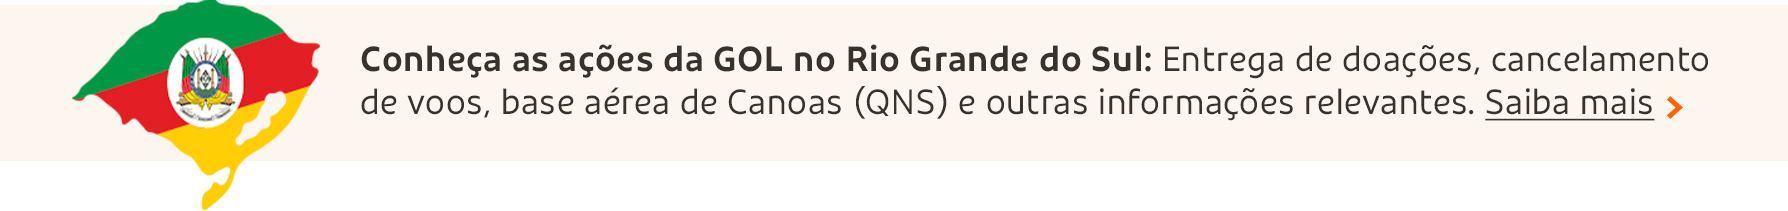 Conheça as ações da GOL no Rio Grande do Sul: Entrega de doações, cancelamento de voos, base sérea de Canoas (QNS) e outras informações relevantes.